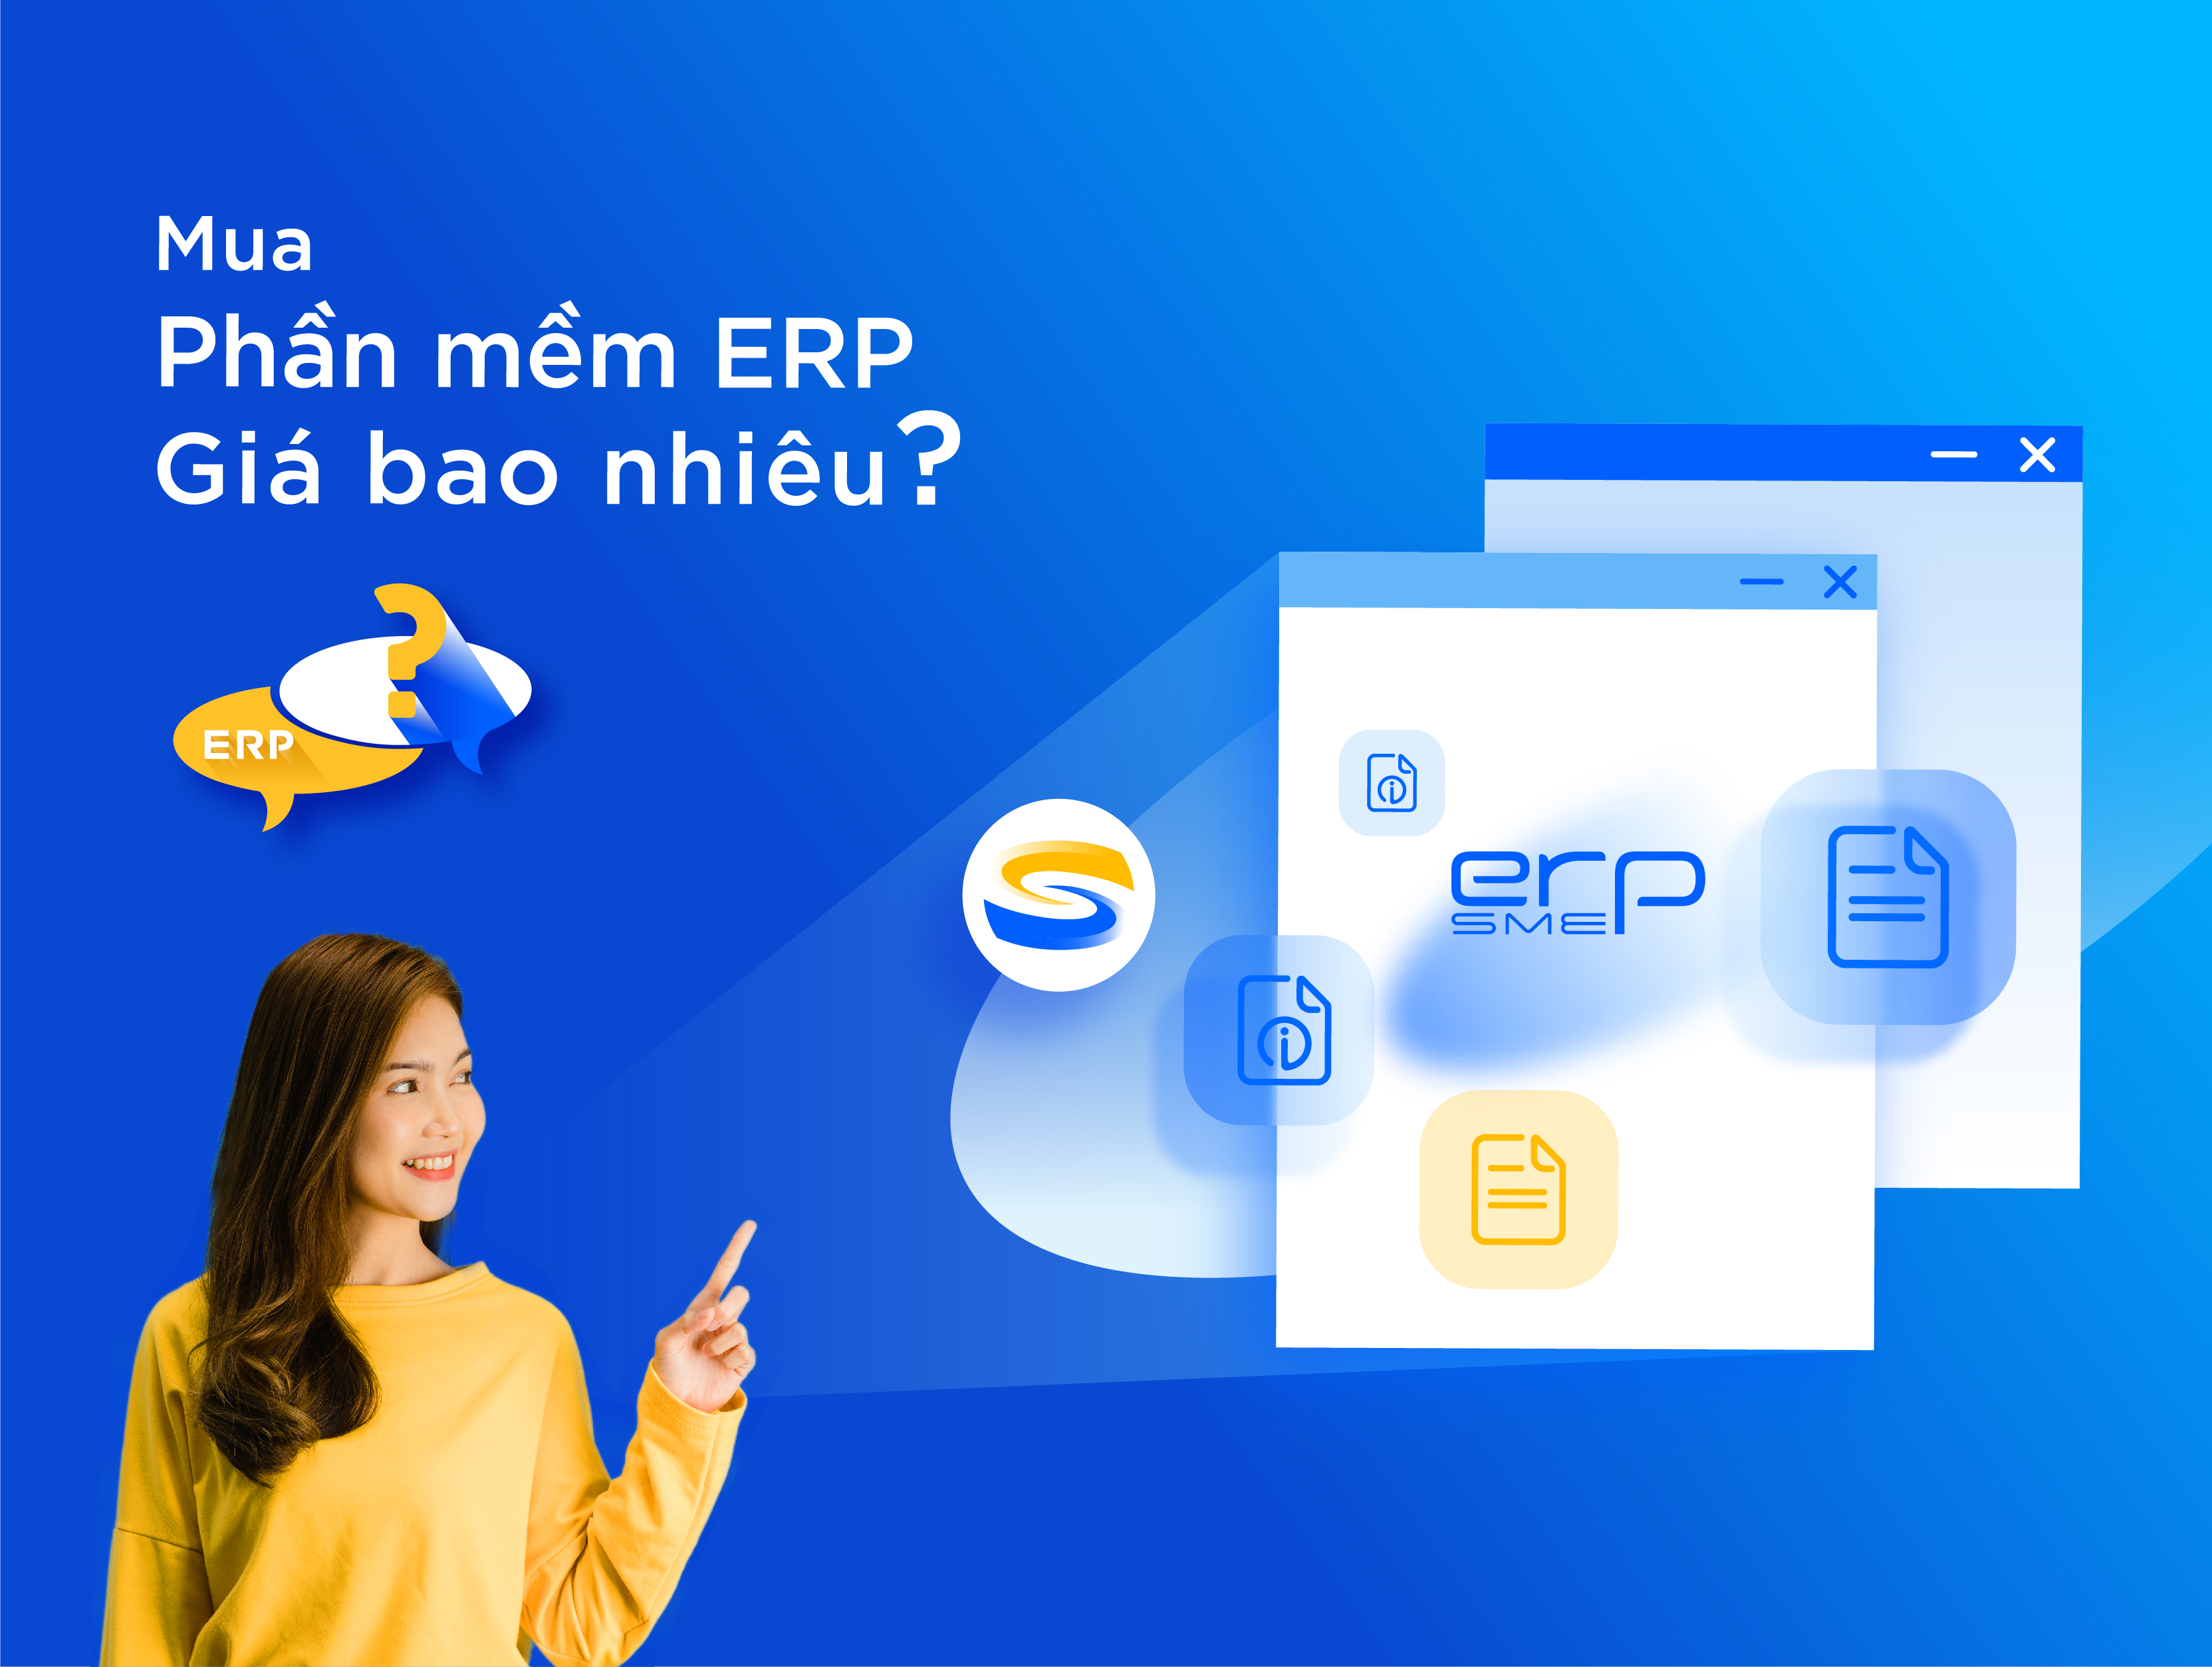 Mua phần mềm ERP giá bao nhiêu?